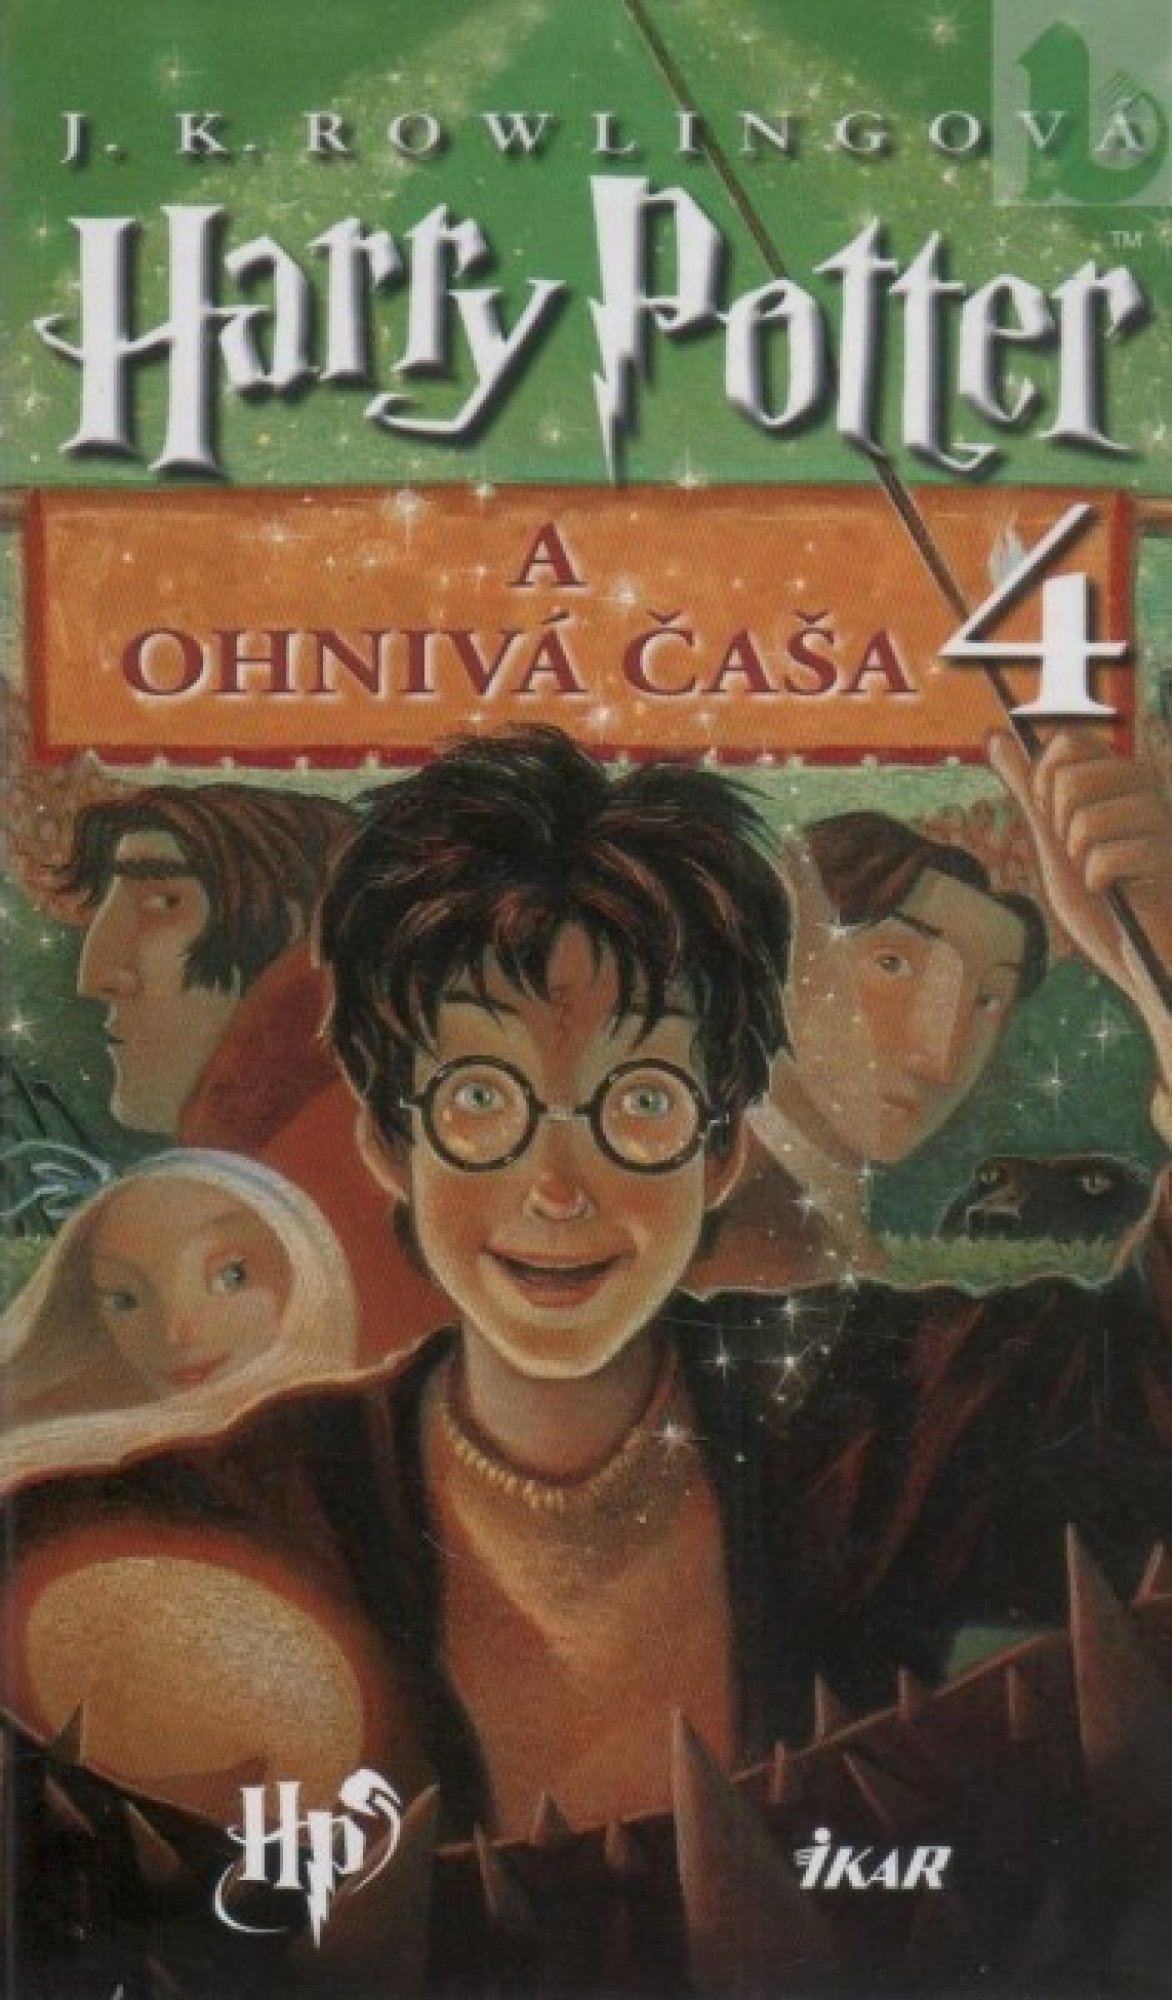 Harry Potter 4 a Ohnivá čaša